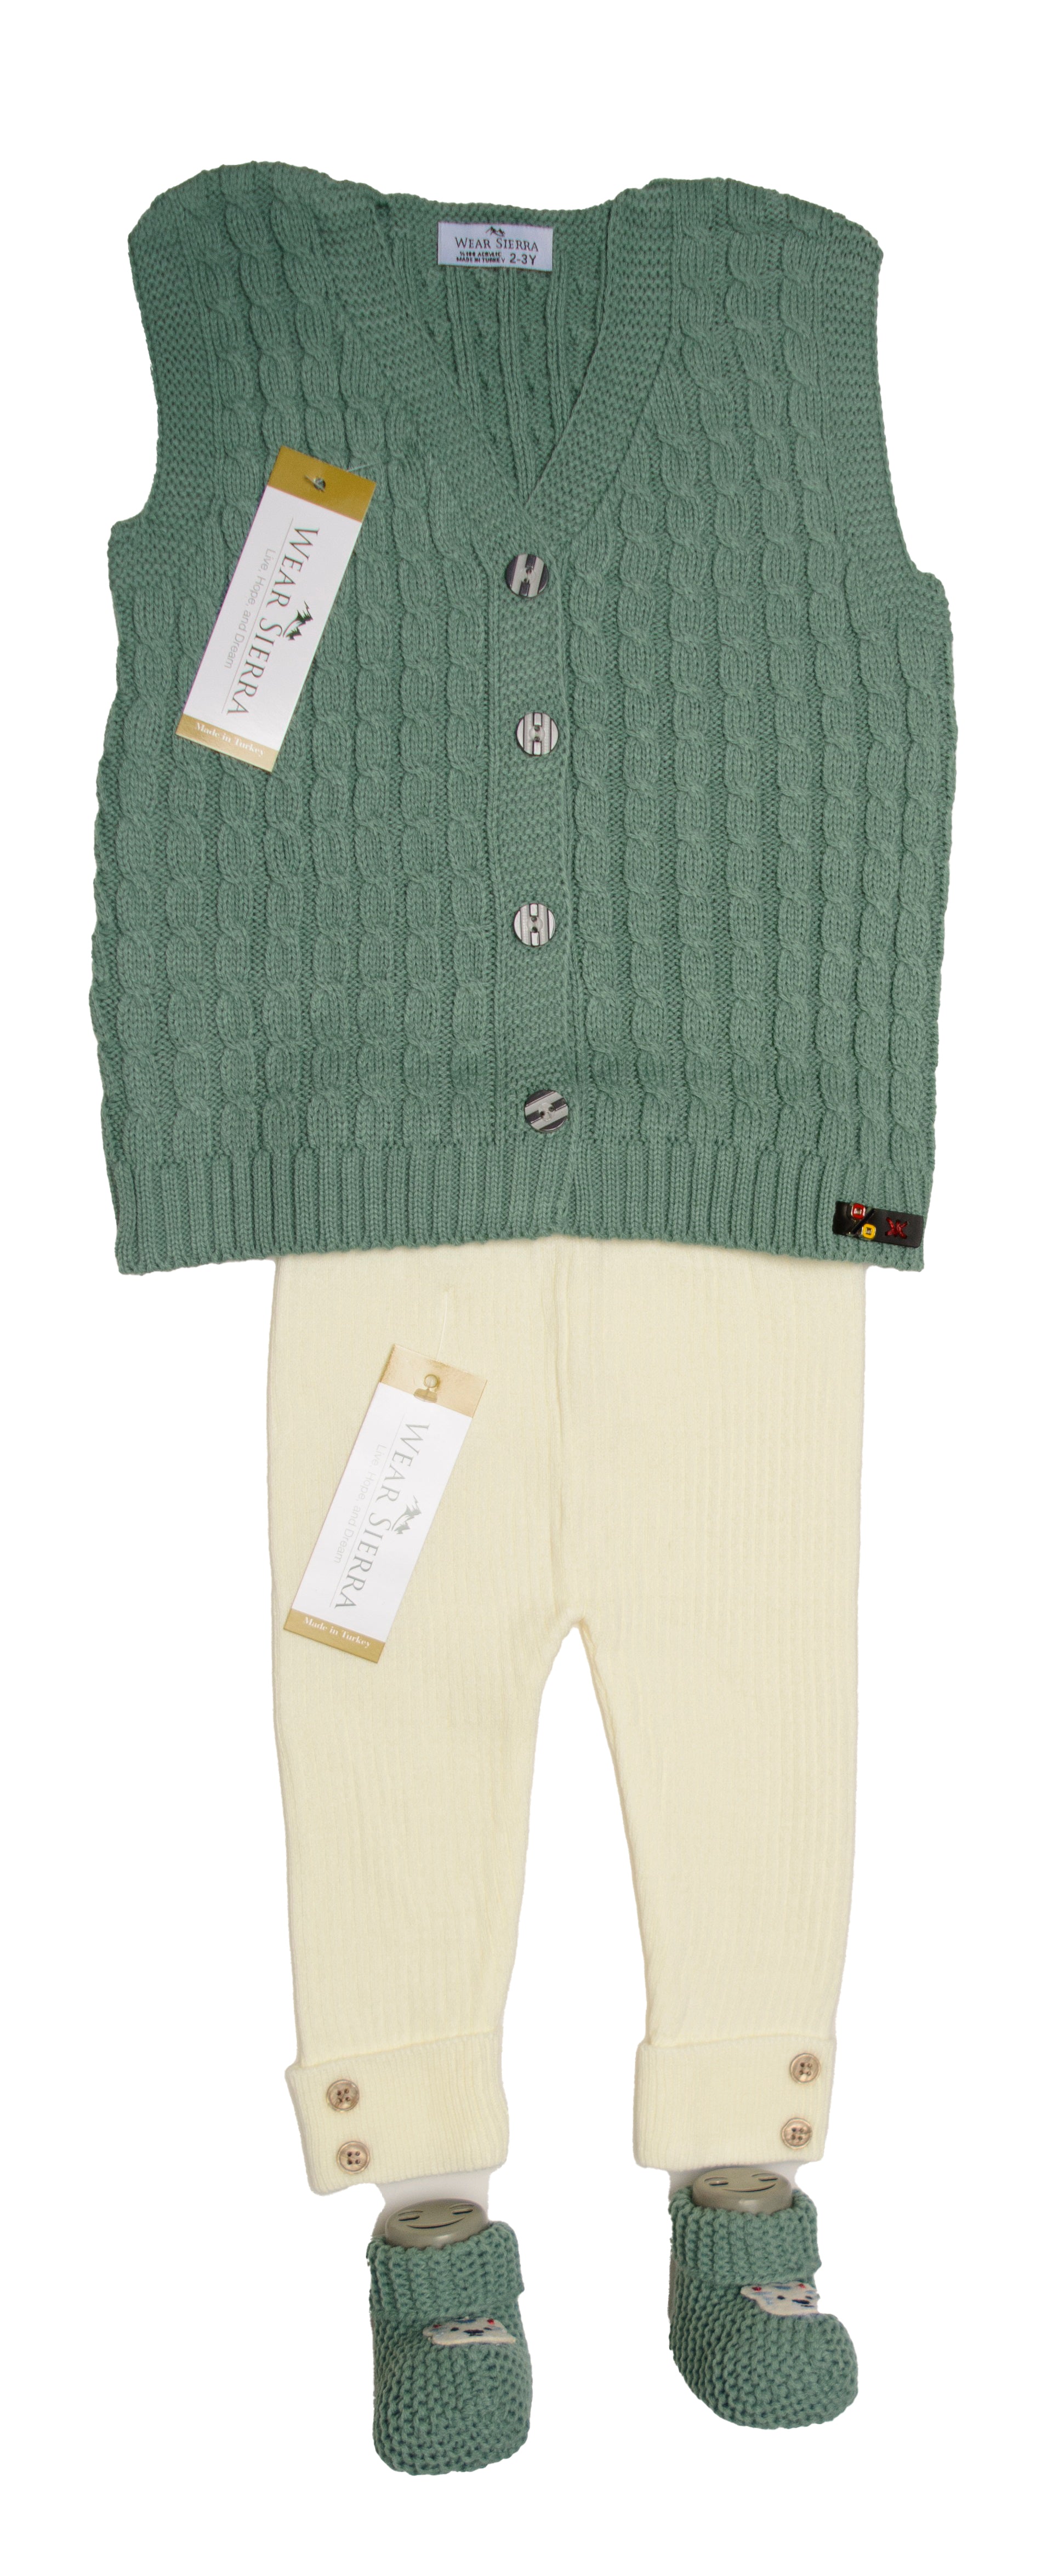 Wear Sierra Cute Design V-Neck  Sweaters For Toddlers And Kids - Wear Sierra